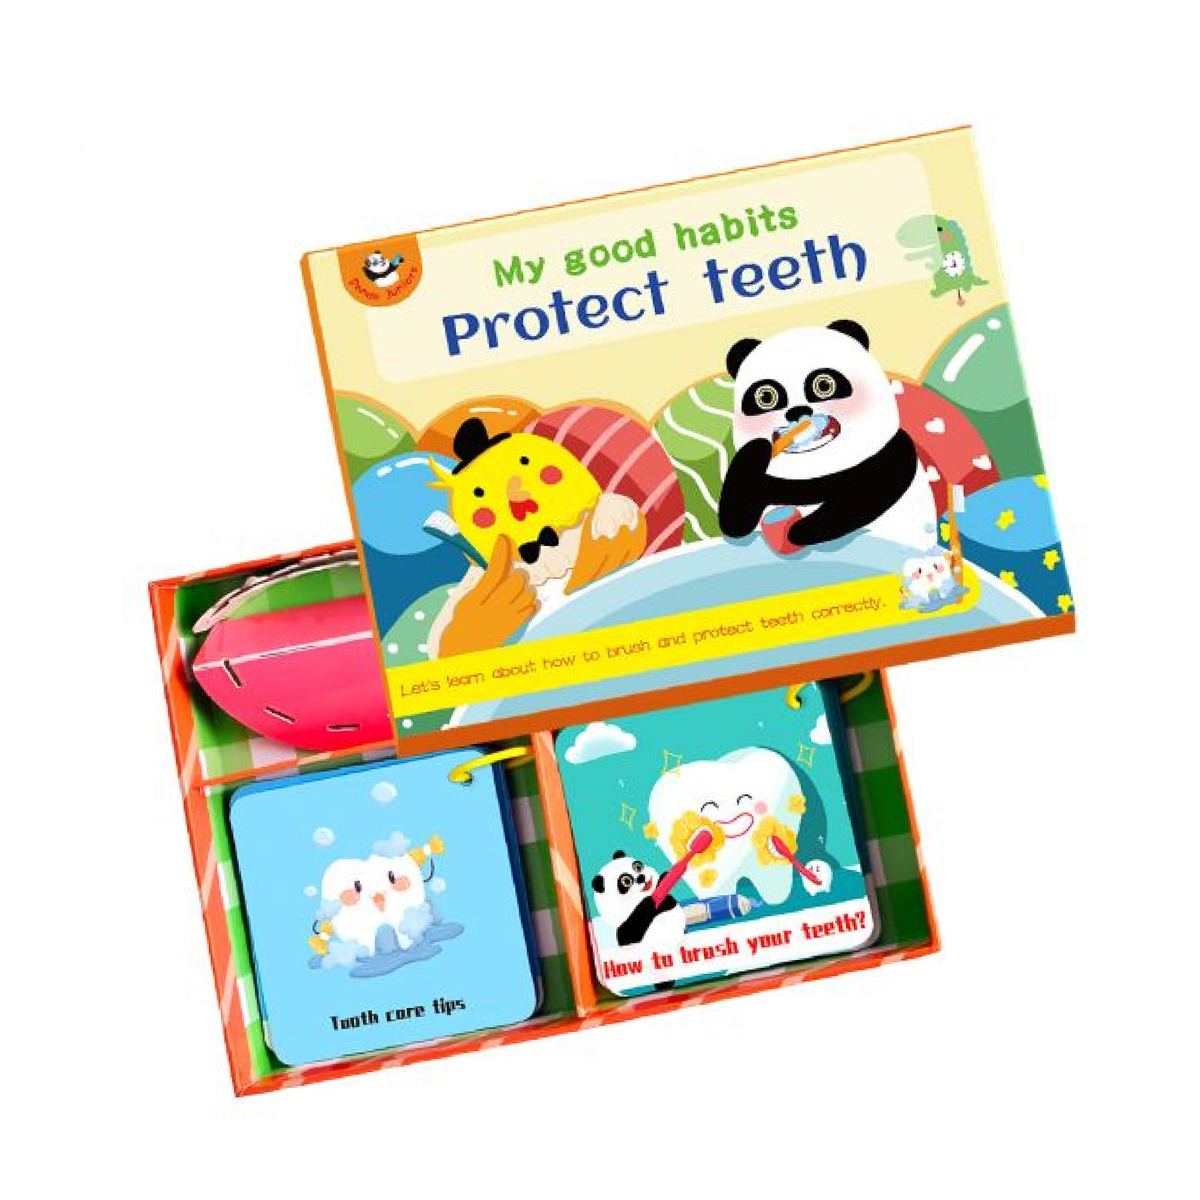 الباندا جونيورز لتعليم العادات الجيدة لحماية الأسنان ، PJ007